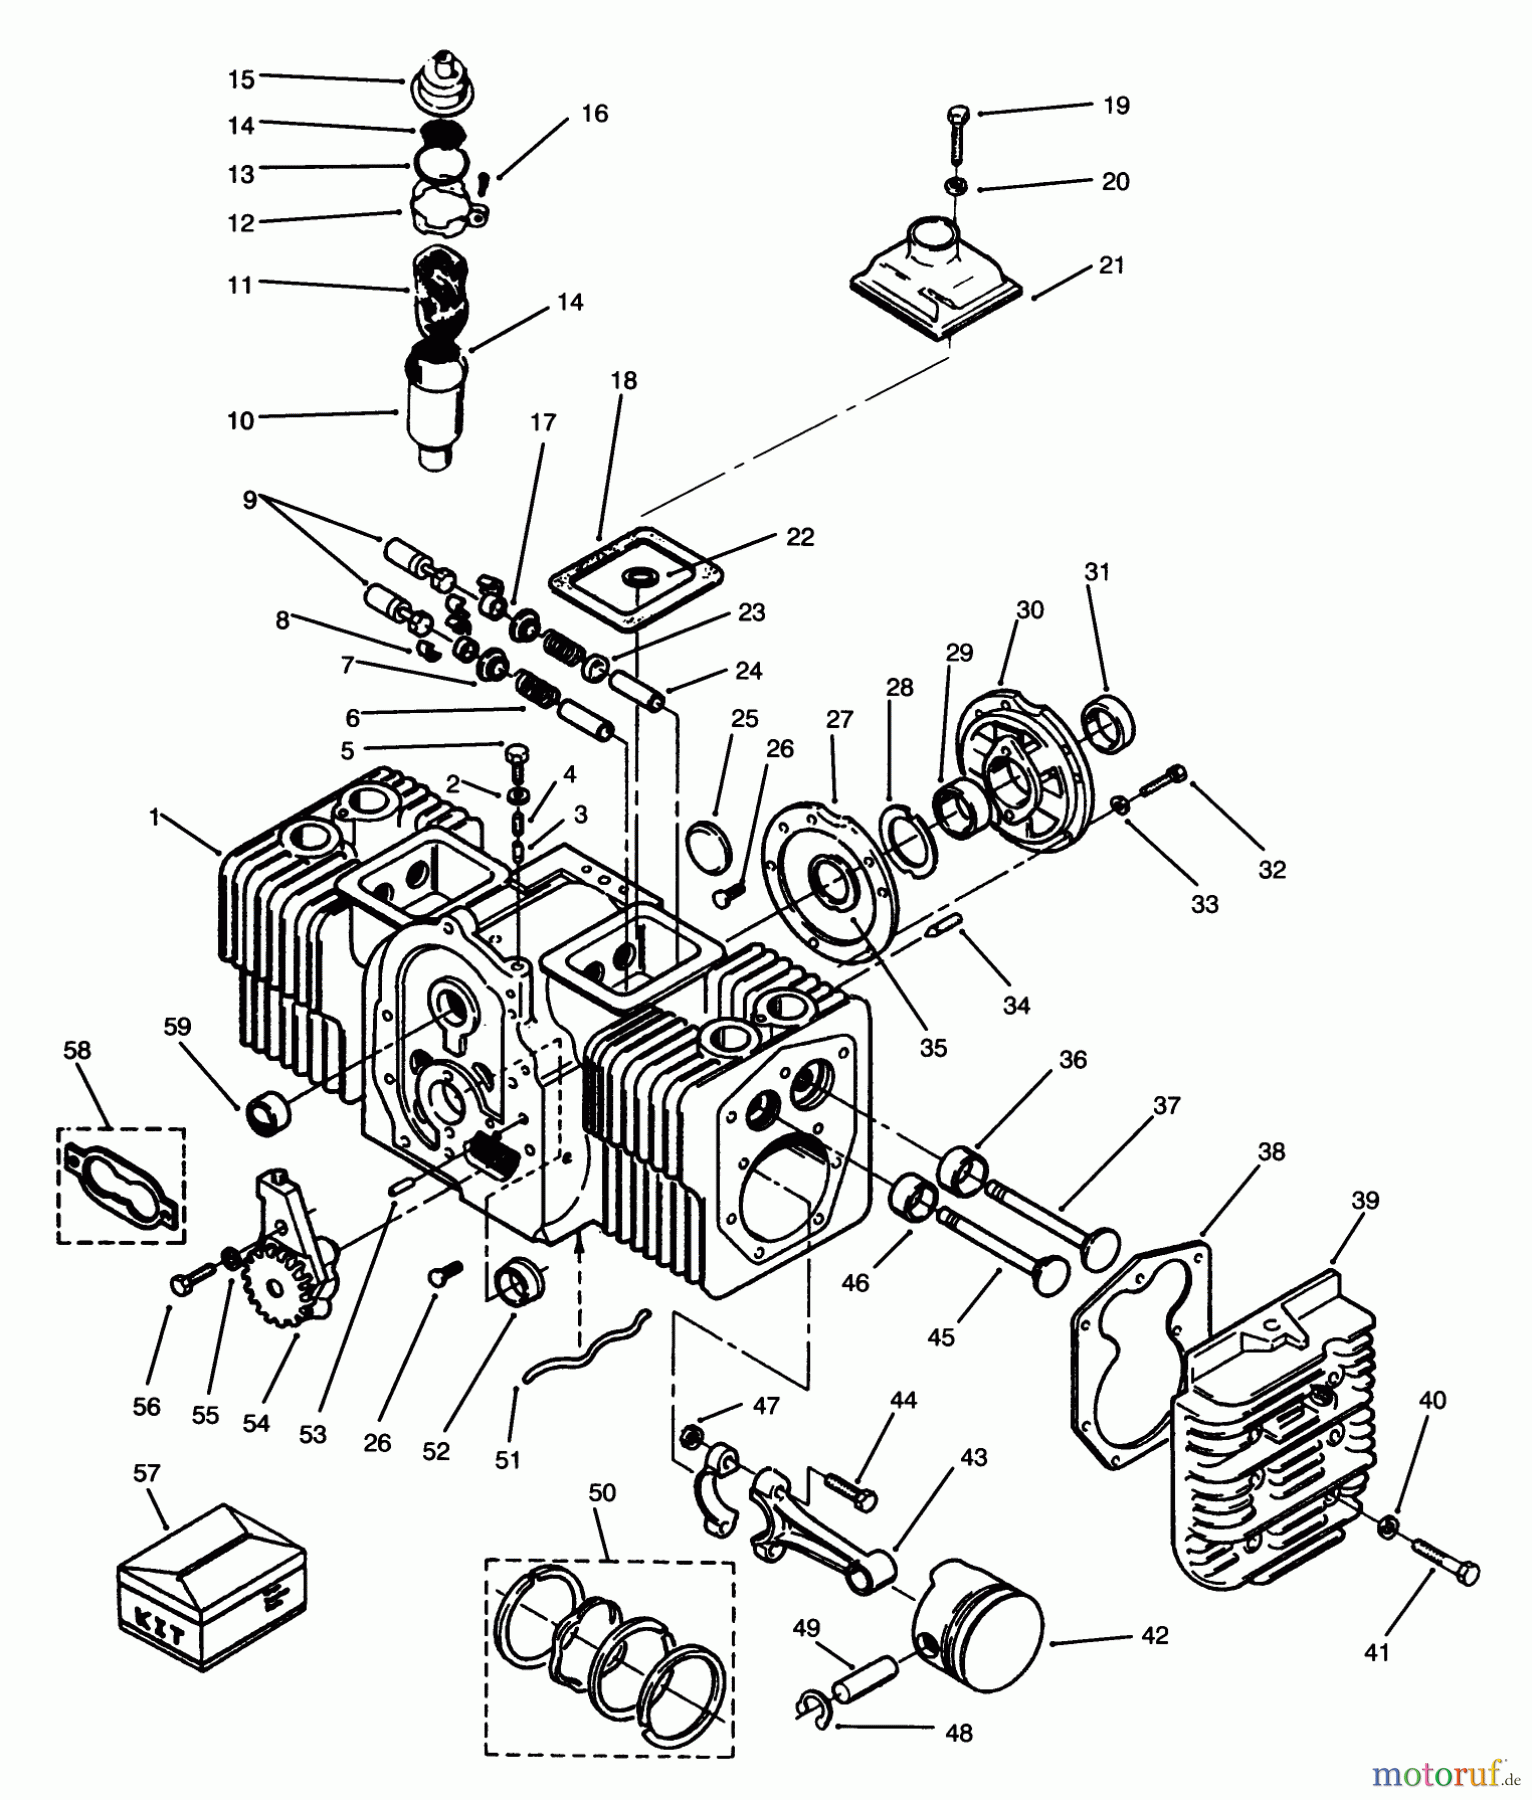  Toro Neu Mowers, Lawn & Garden Tractor Seite 1 73501 (520-H) - Toro 520-H Garden Tractor, 1995 (59000001-59000411) ENGINE CYLINDER BLOCK